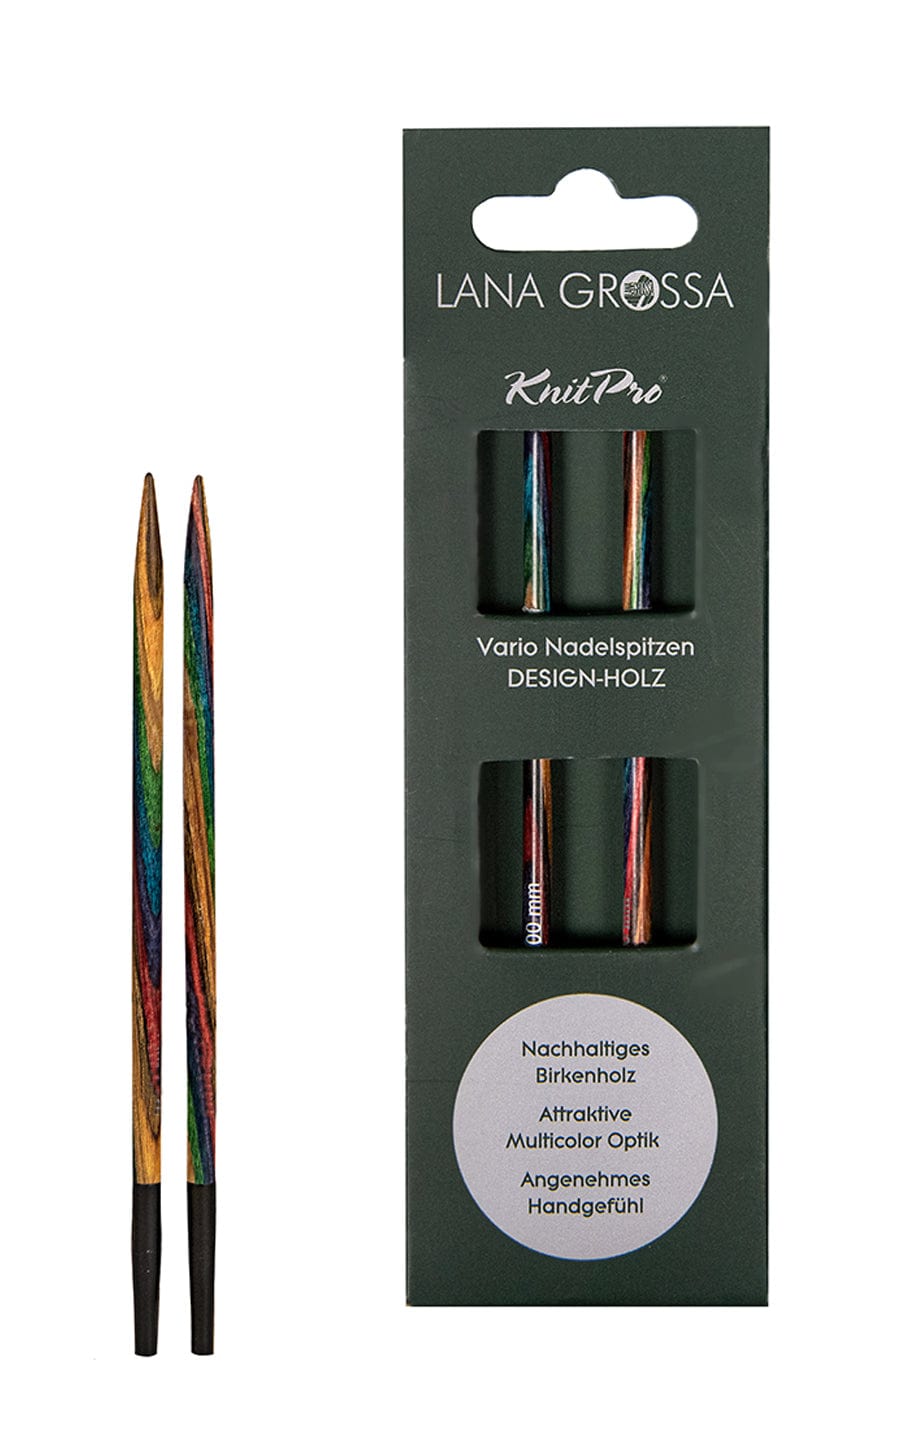 12,0 mm Nadelspitze Vario aus Holz - neue Verpackung von LANA GROSSA jetzt online kaufen bei OONIQUE